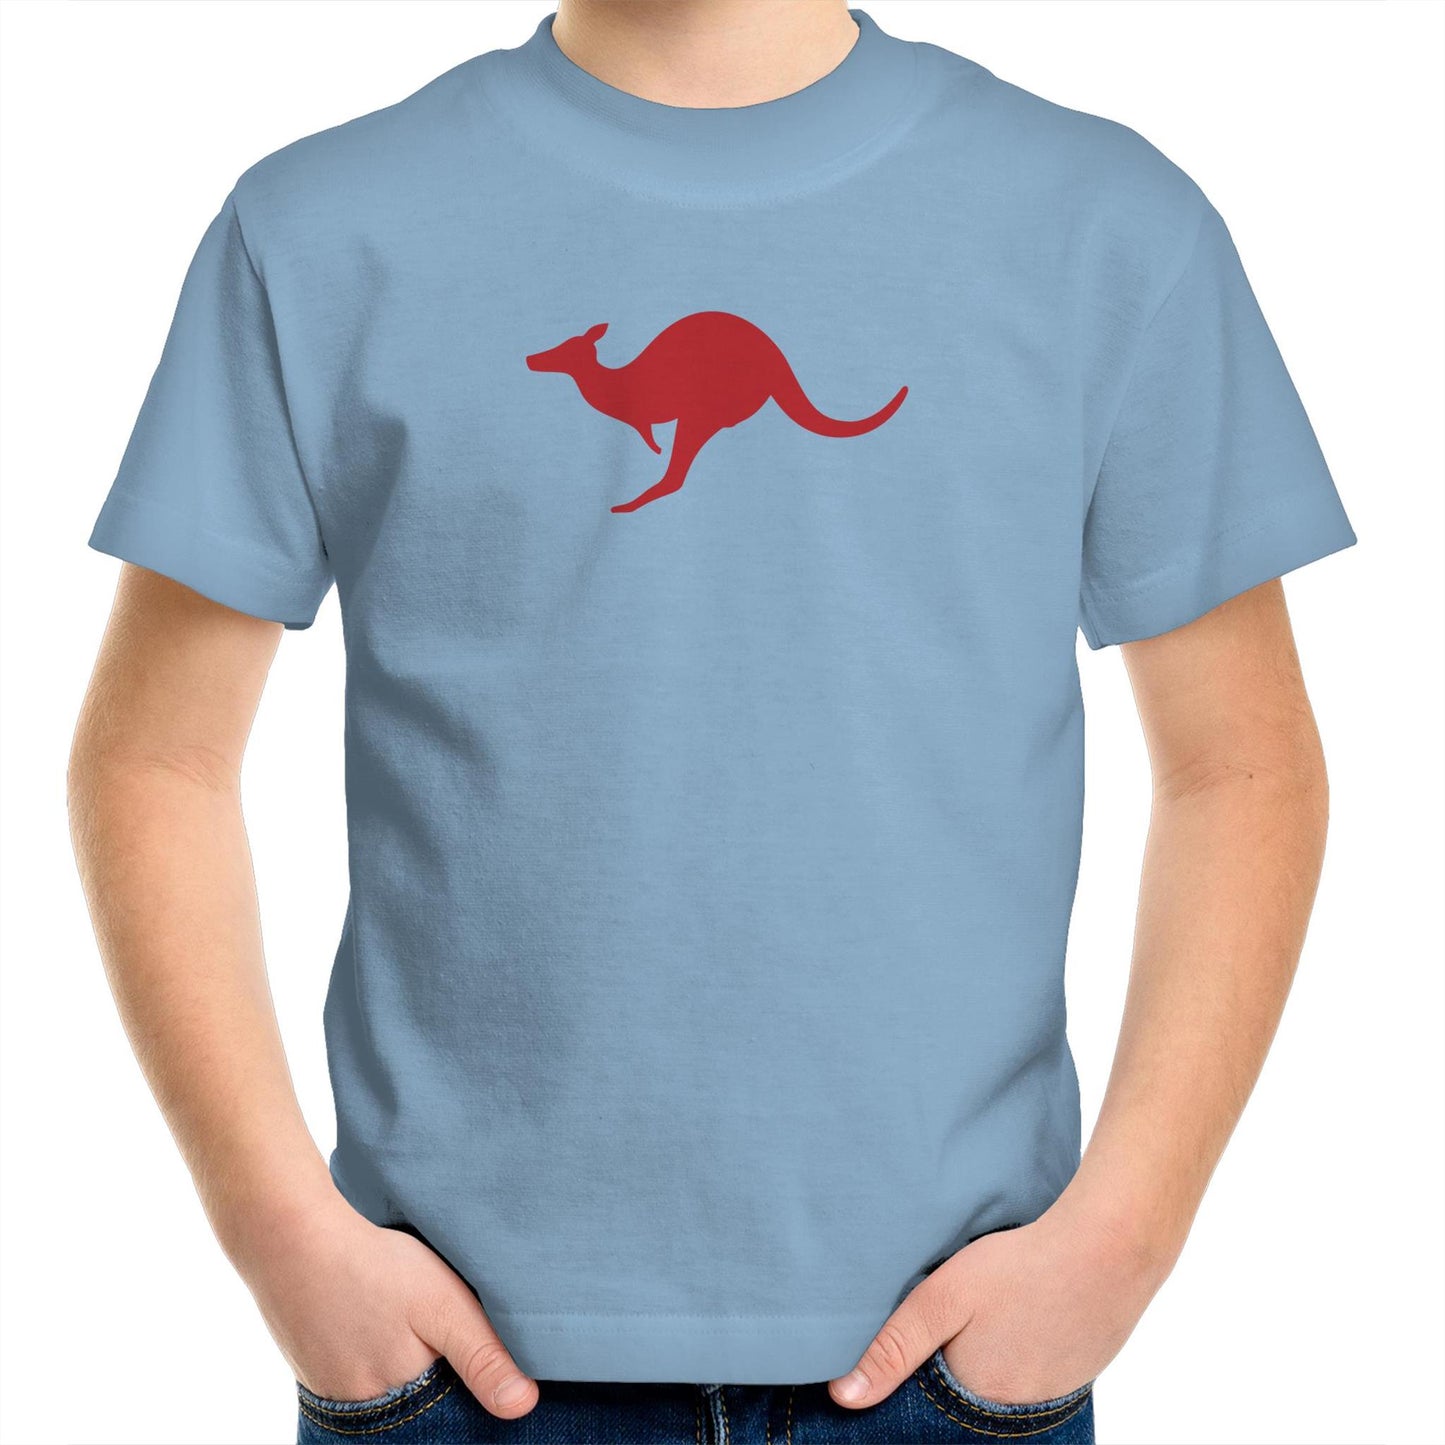 Kangaroo Too T Shirts for Kids